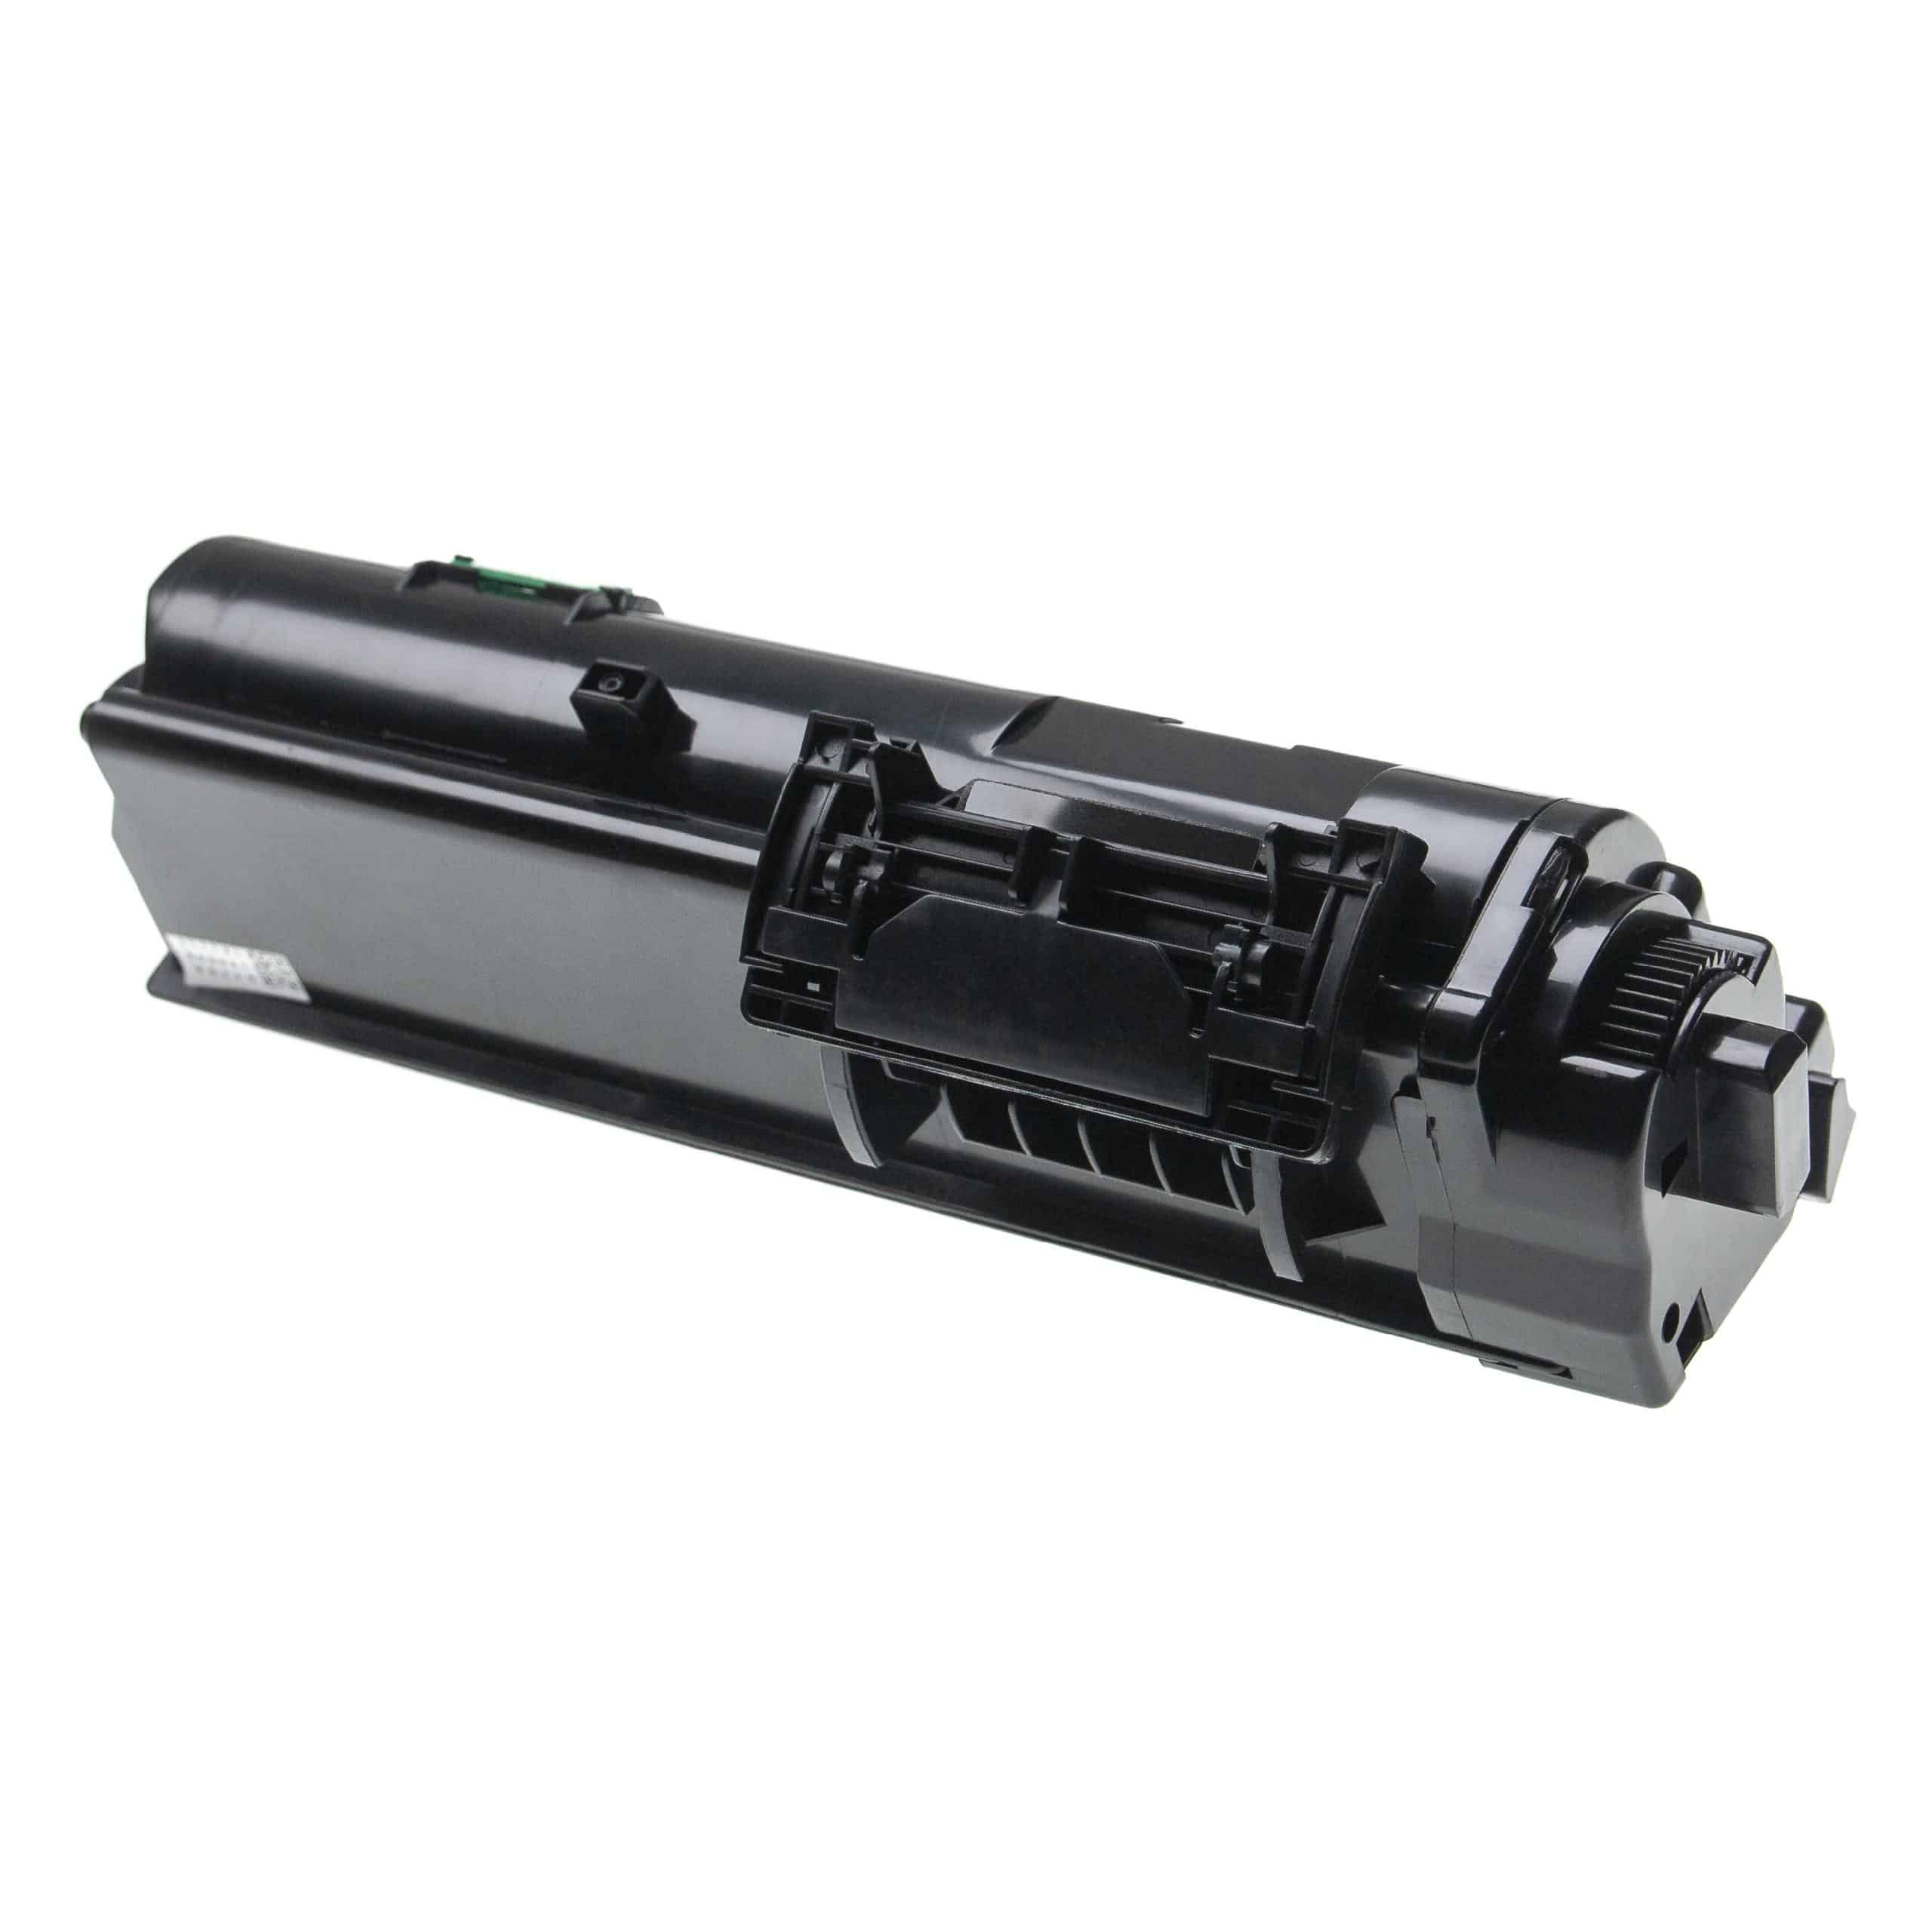 Cartouche de toner remplace Kyocera TK-1150 pour imprimante laser Kyocera, noir